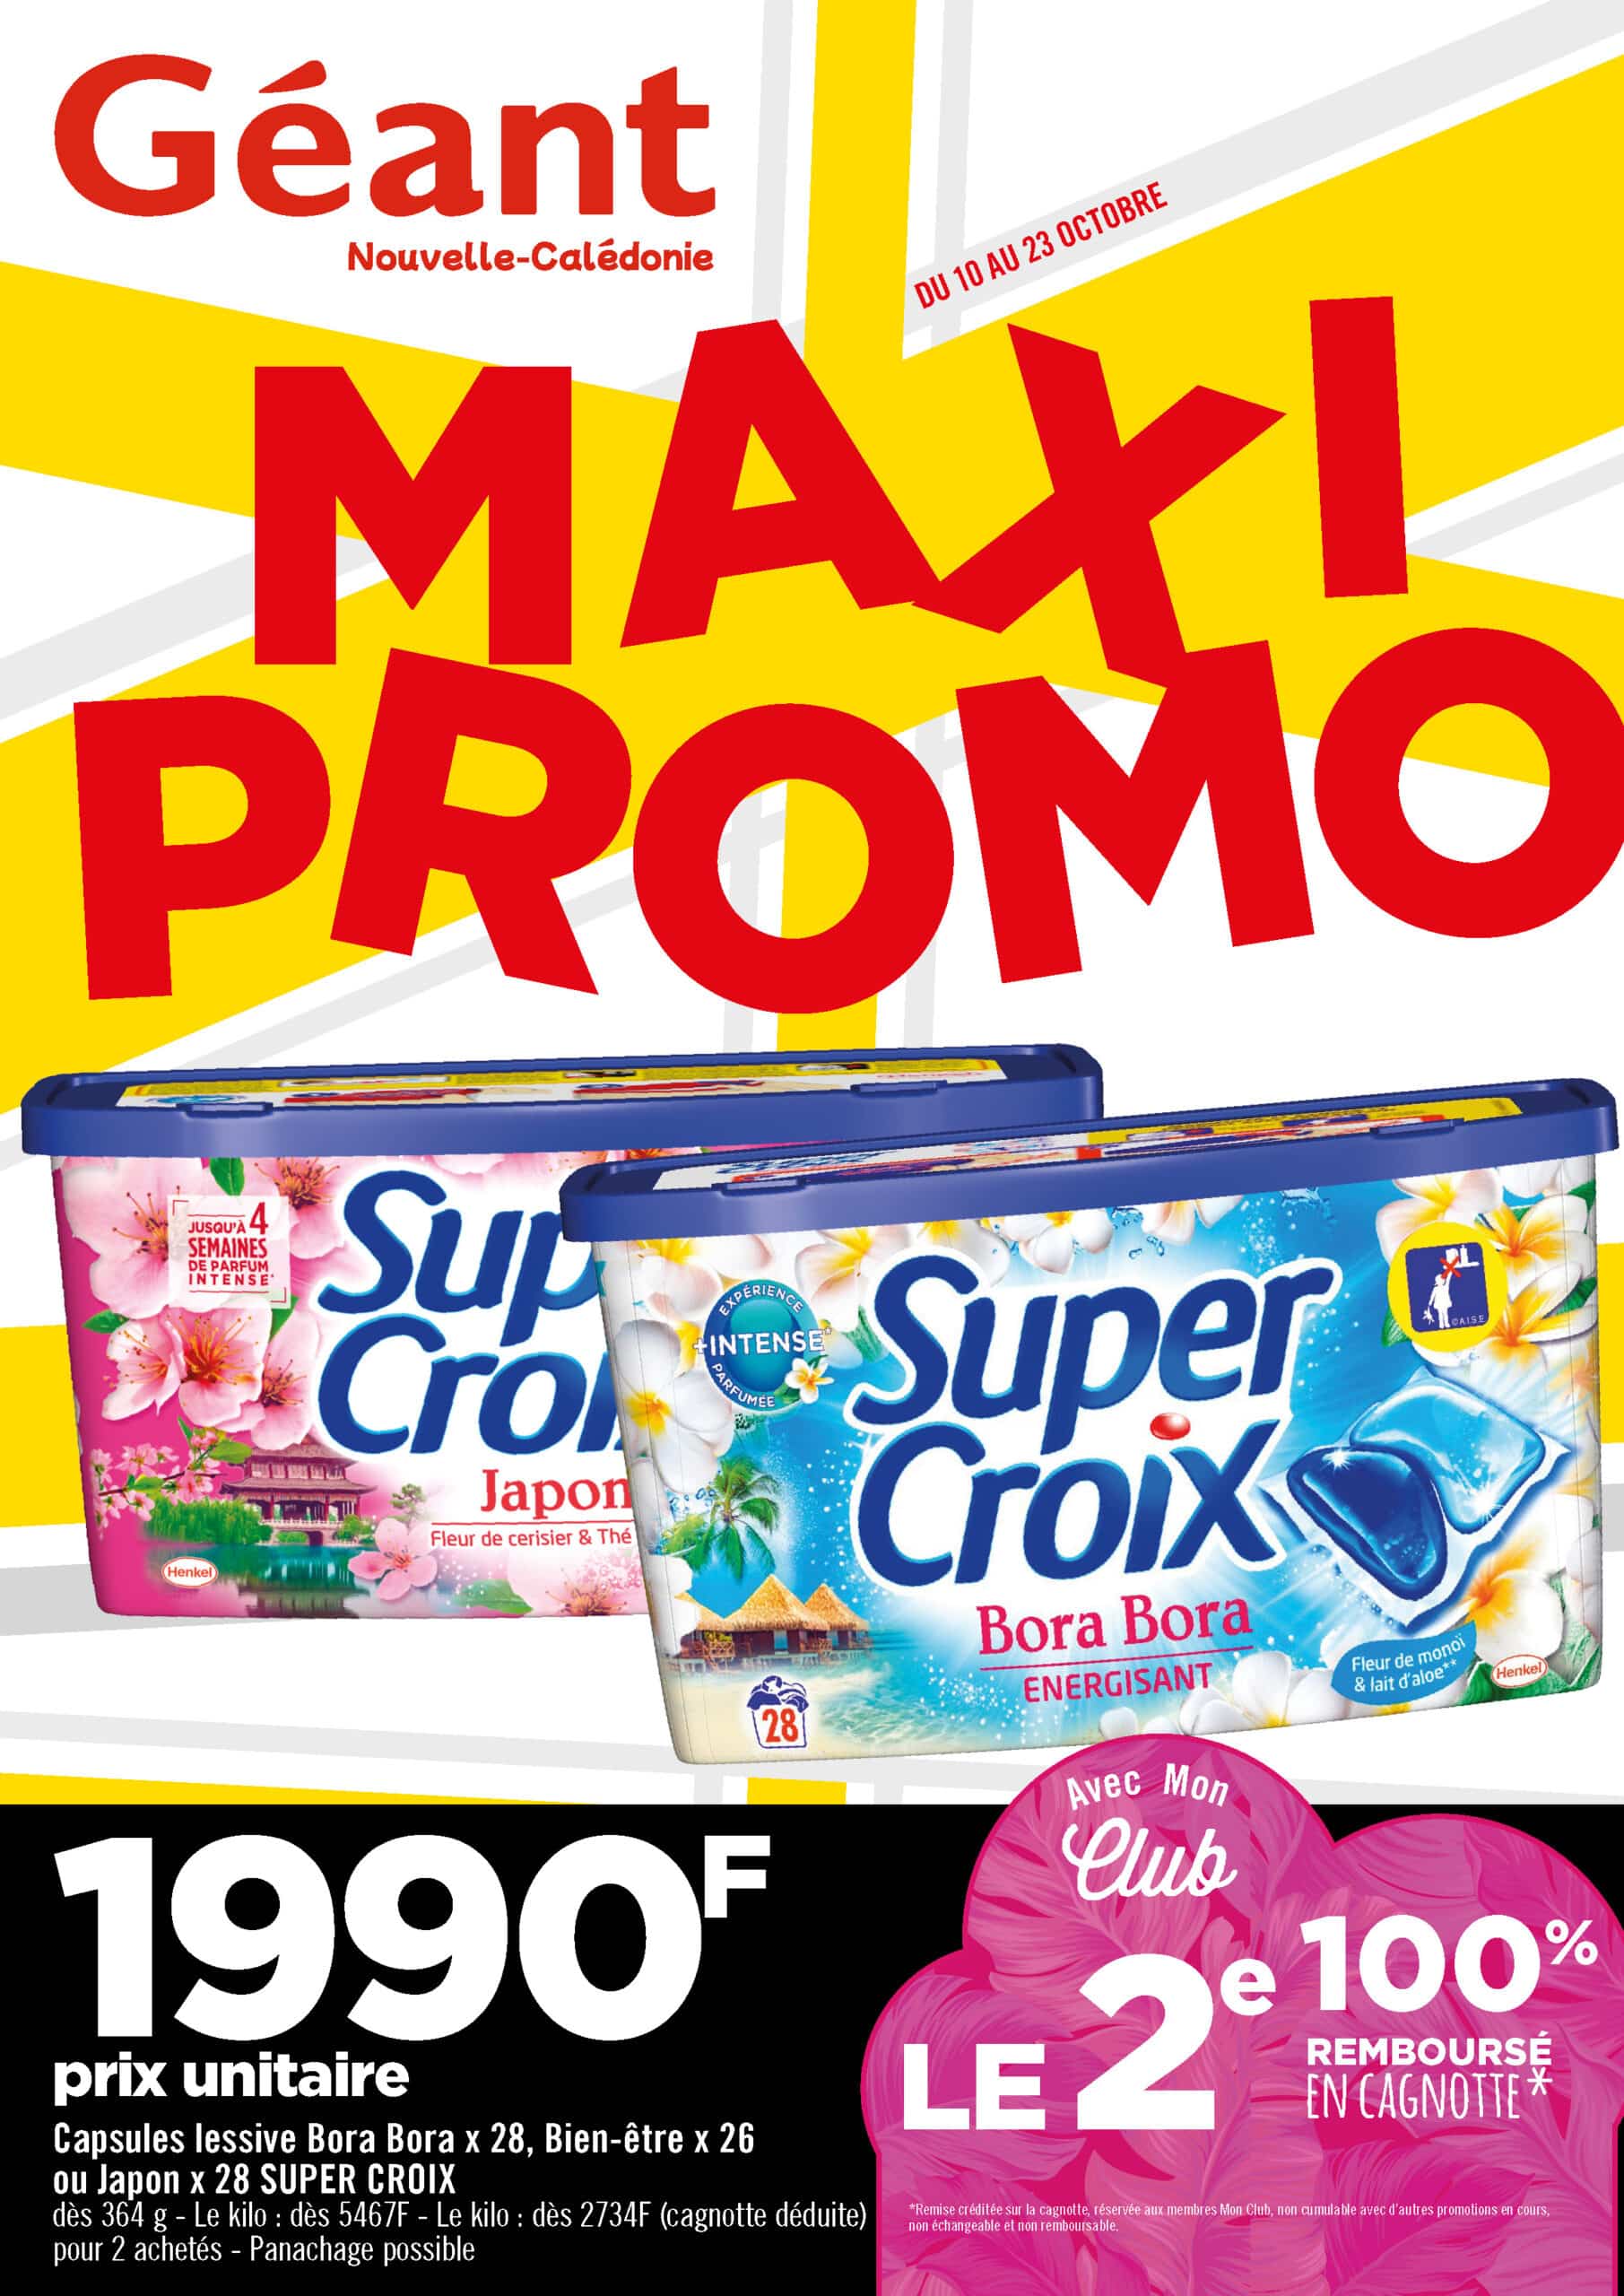 Les Maxi Promo chez Géant du 10 au 23 octobre 2022